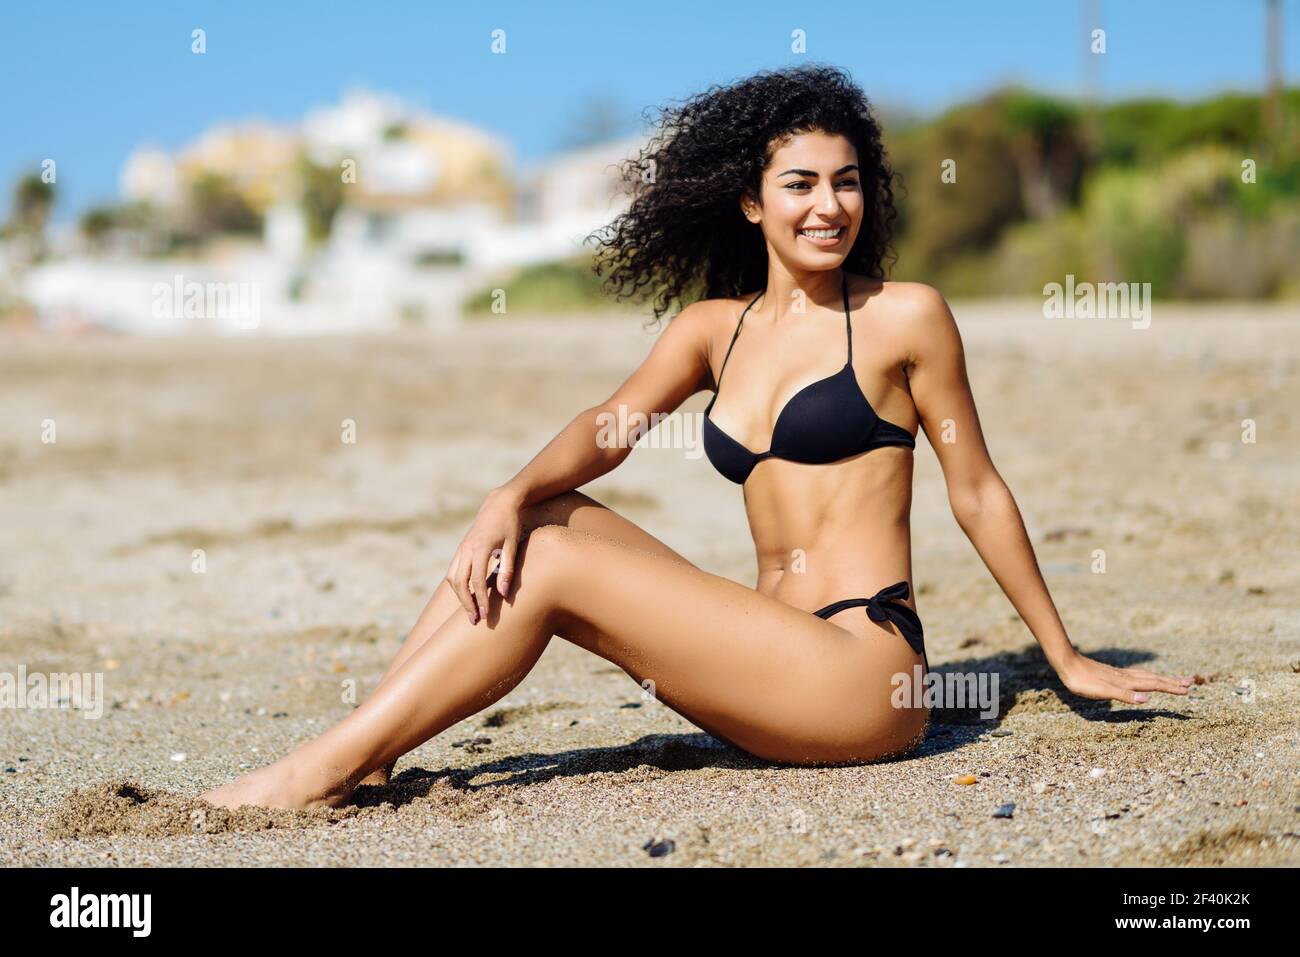 mujer árabe con hermoso cuerpo en traje baño sentado en la arena de la playa. Mujer sonriente con peinado rizado largo usando bikini negro. Mujer árabe con cuerpo hermoso en